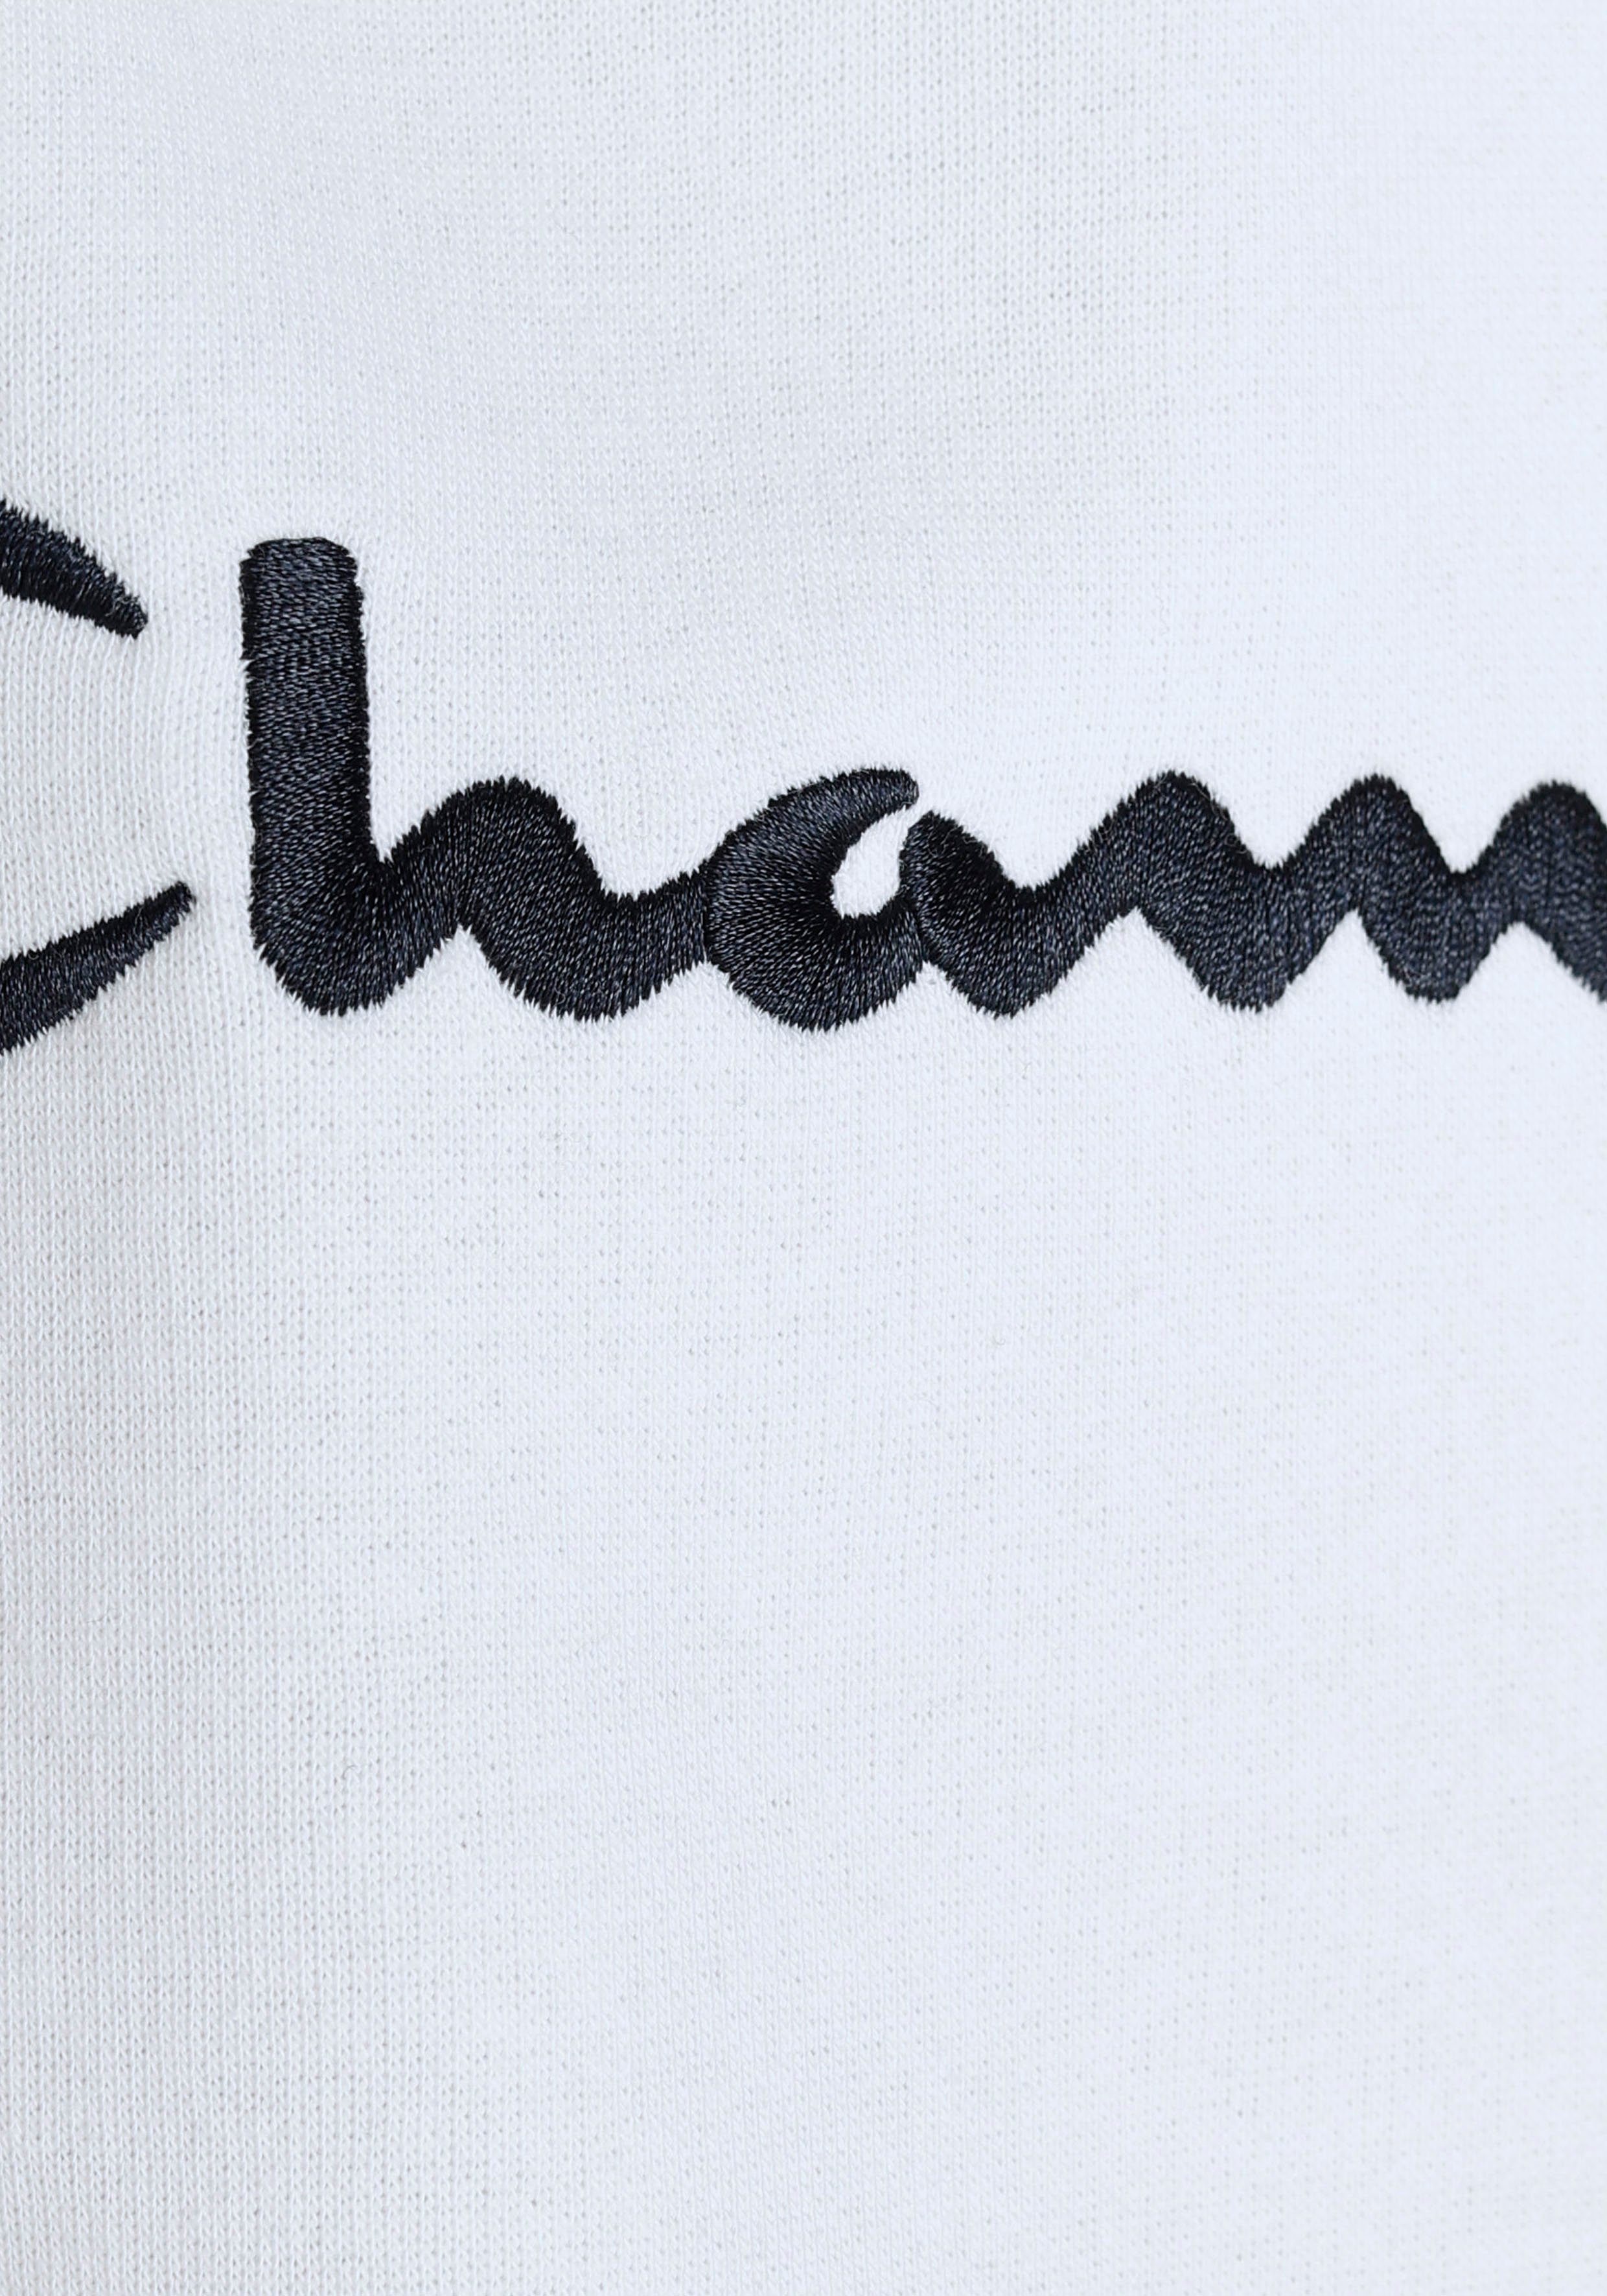 Champion Sweatshirt Classic Hooded weiß Sweatshirt Logo - für large Kinder